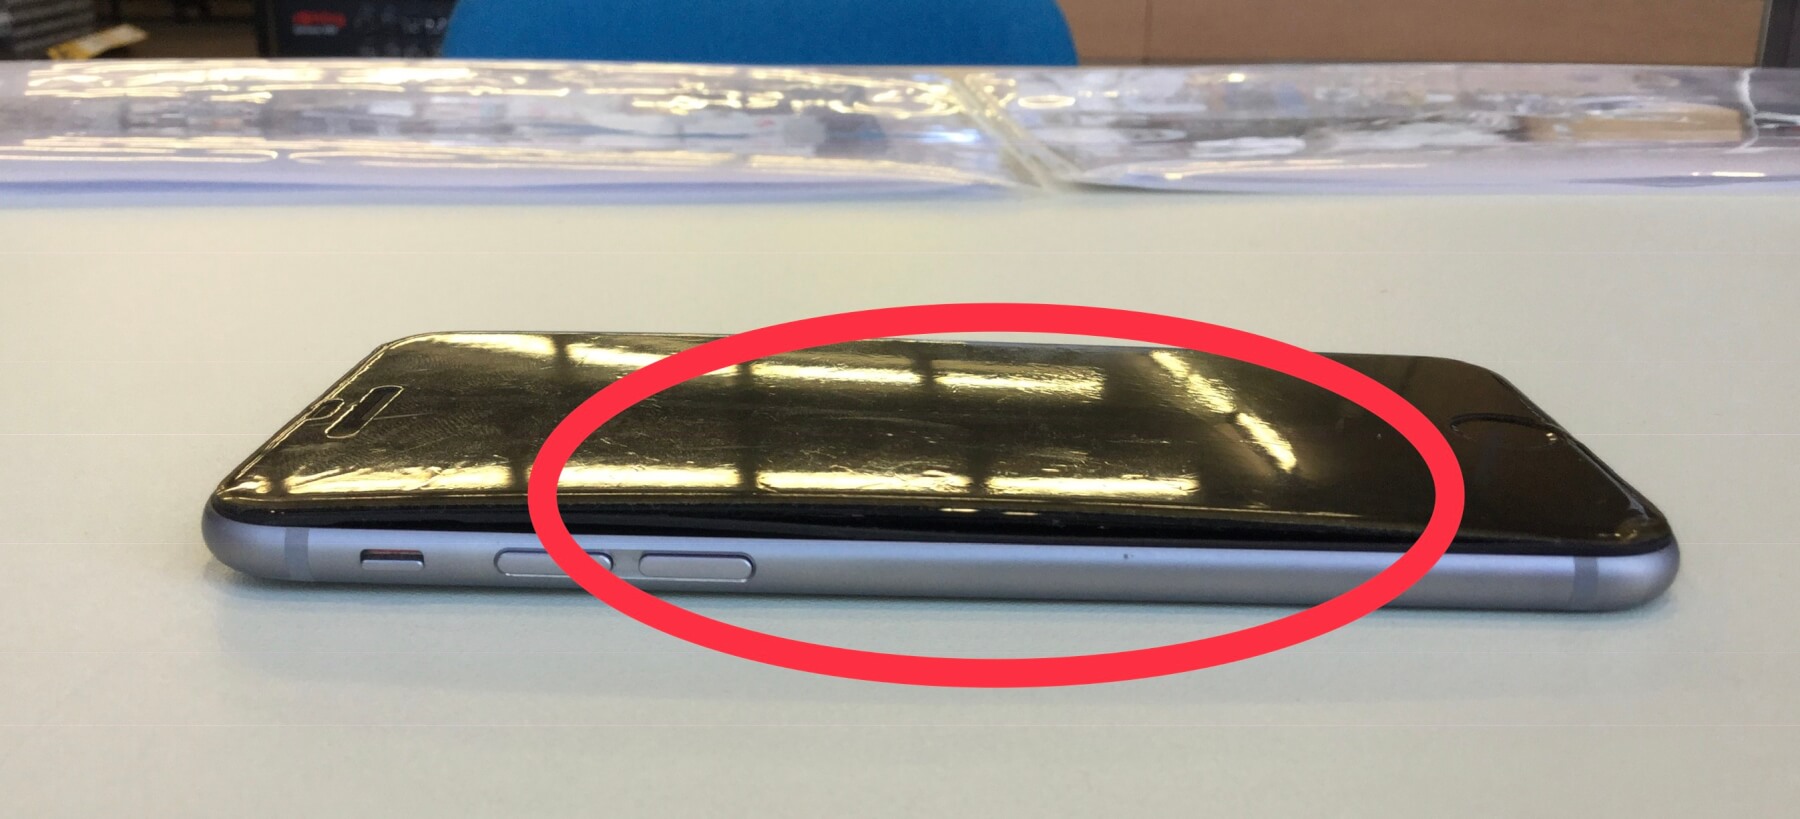 バッテリーが膨らんで画面が浮いてしまったiPhone6